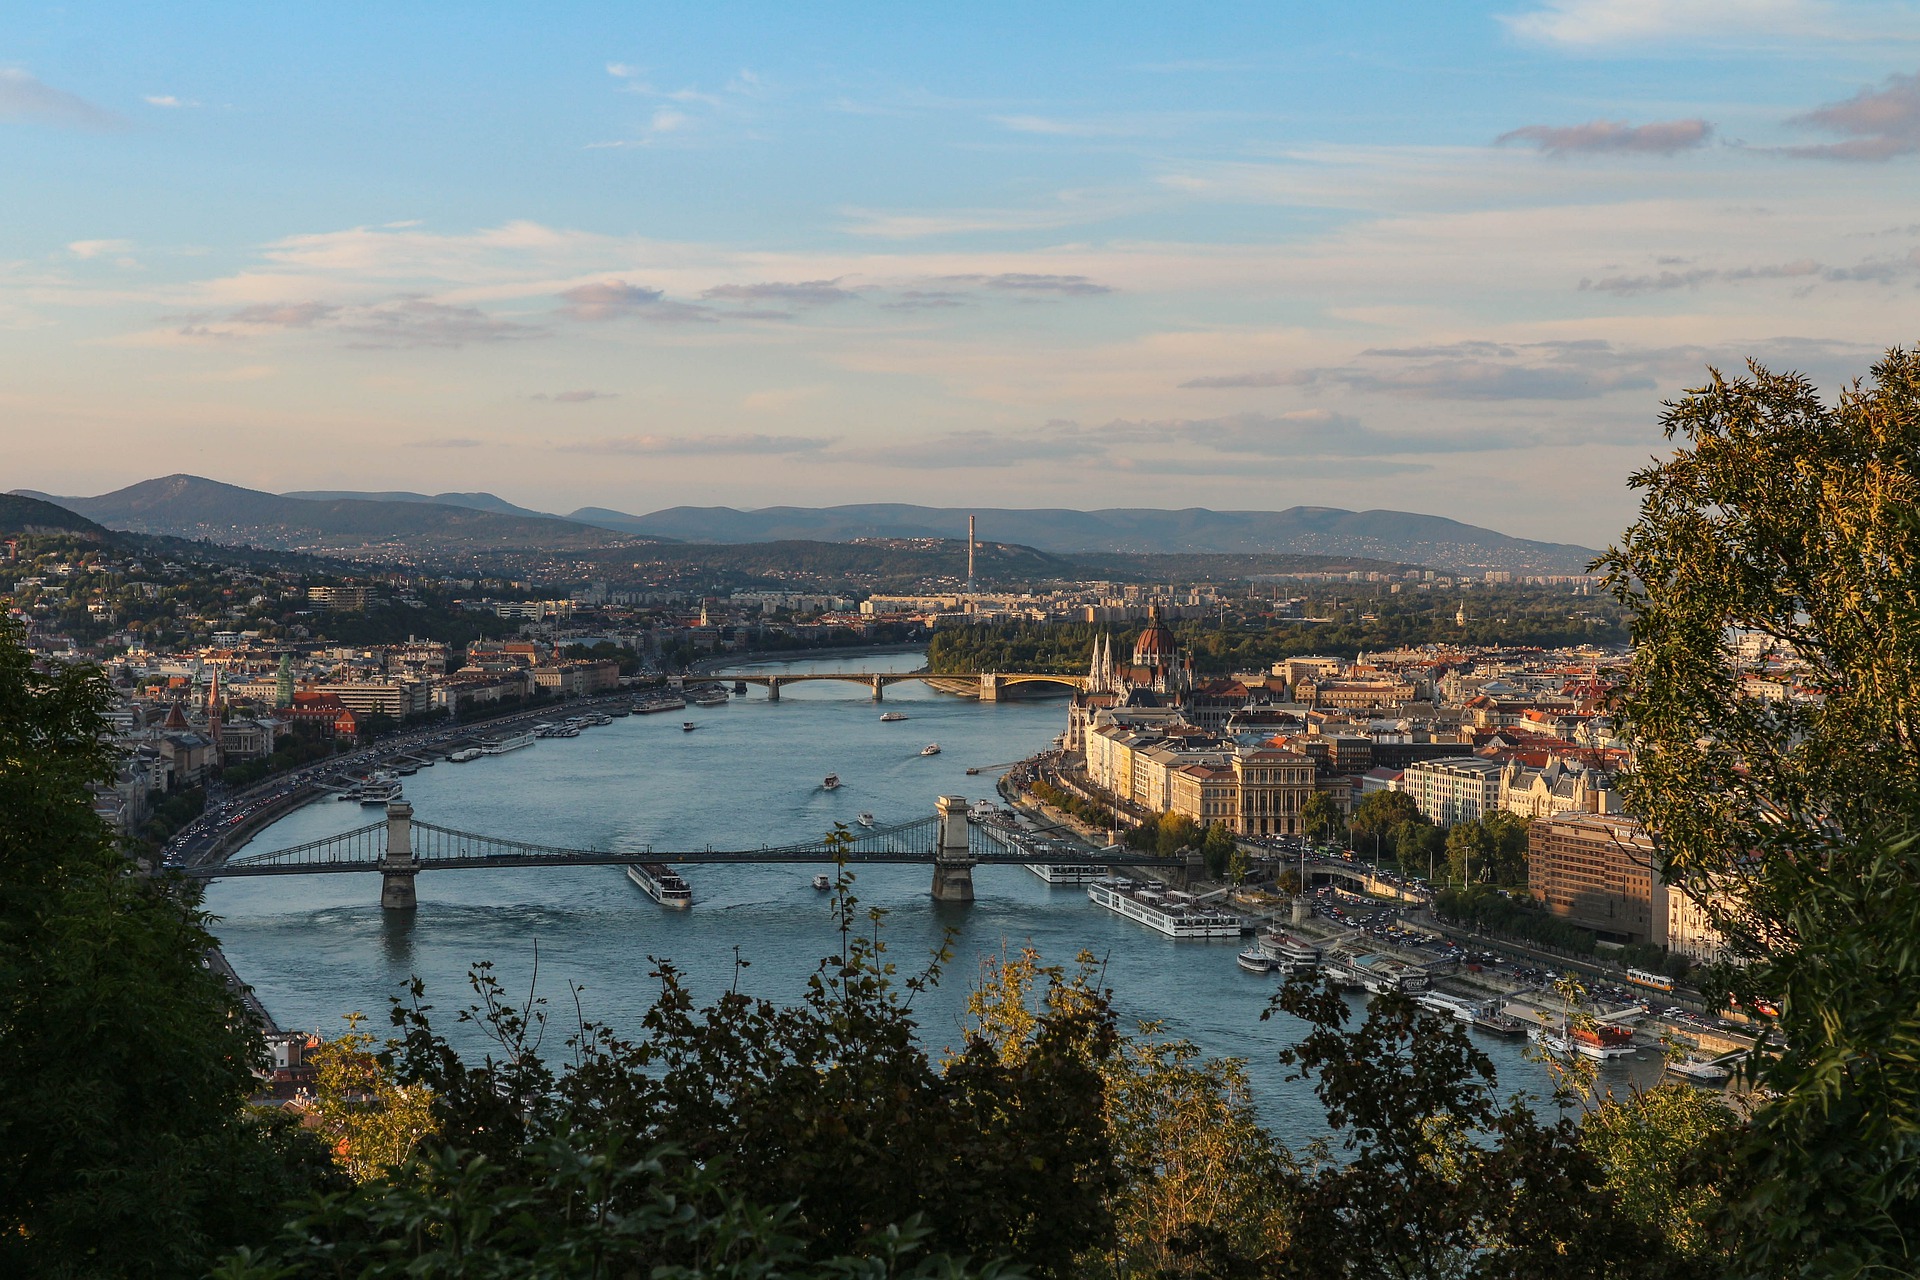 Pest, Buda és Óbuda fővárossá egyesítése